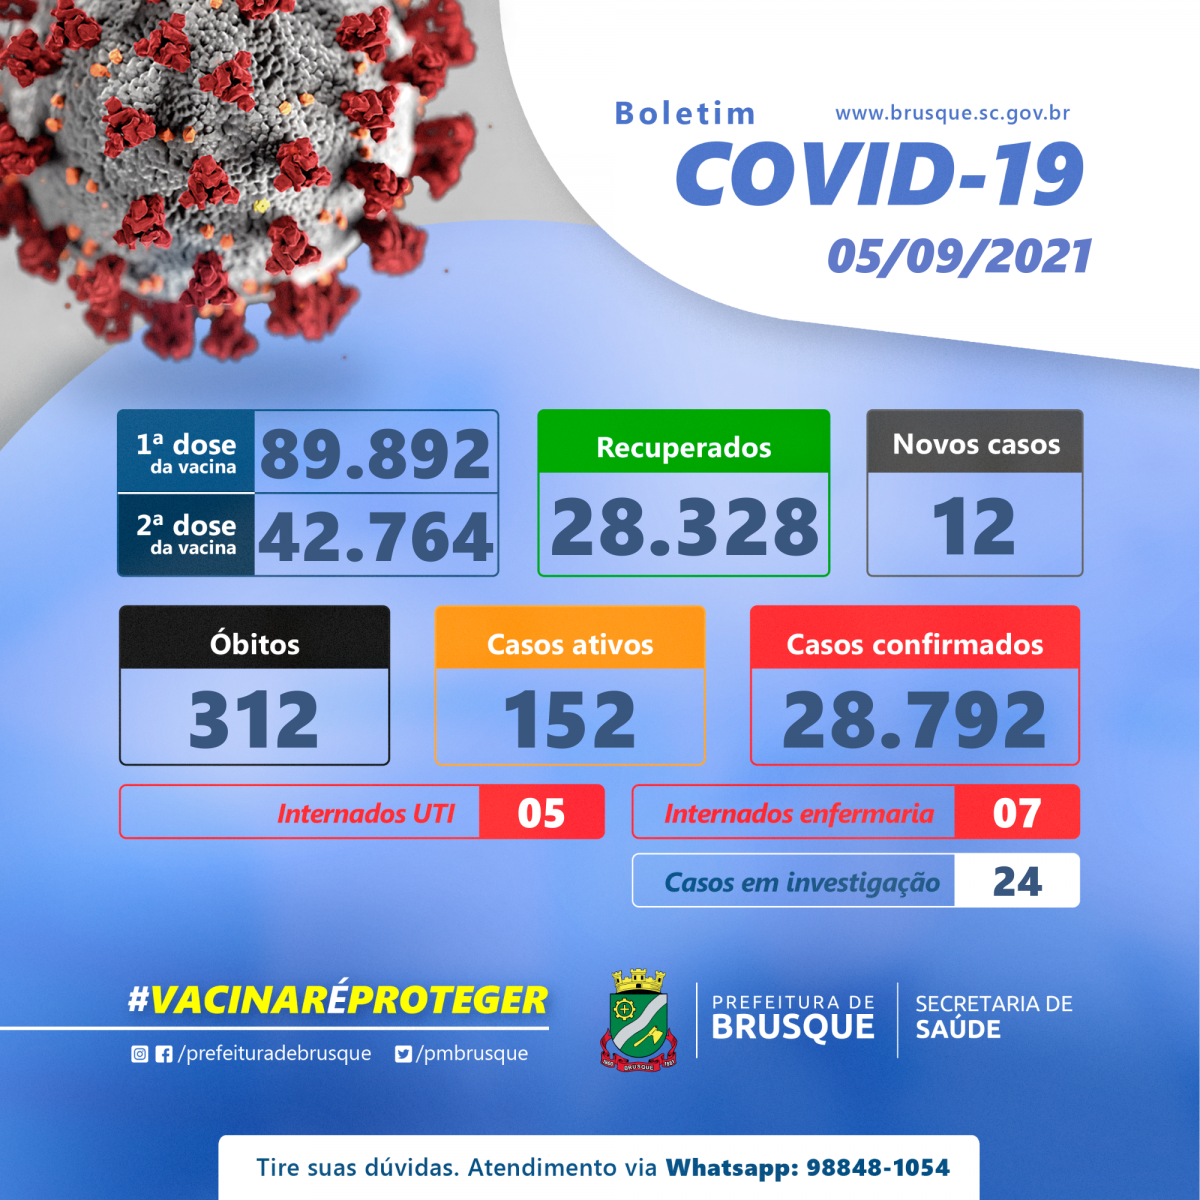 Covid-19: Confira o boletim epidemiológico deste domingo (05)